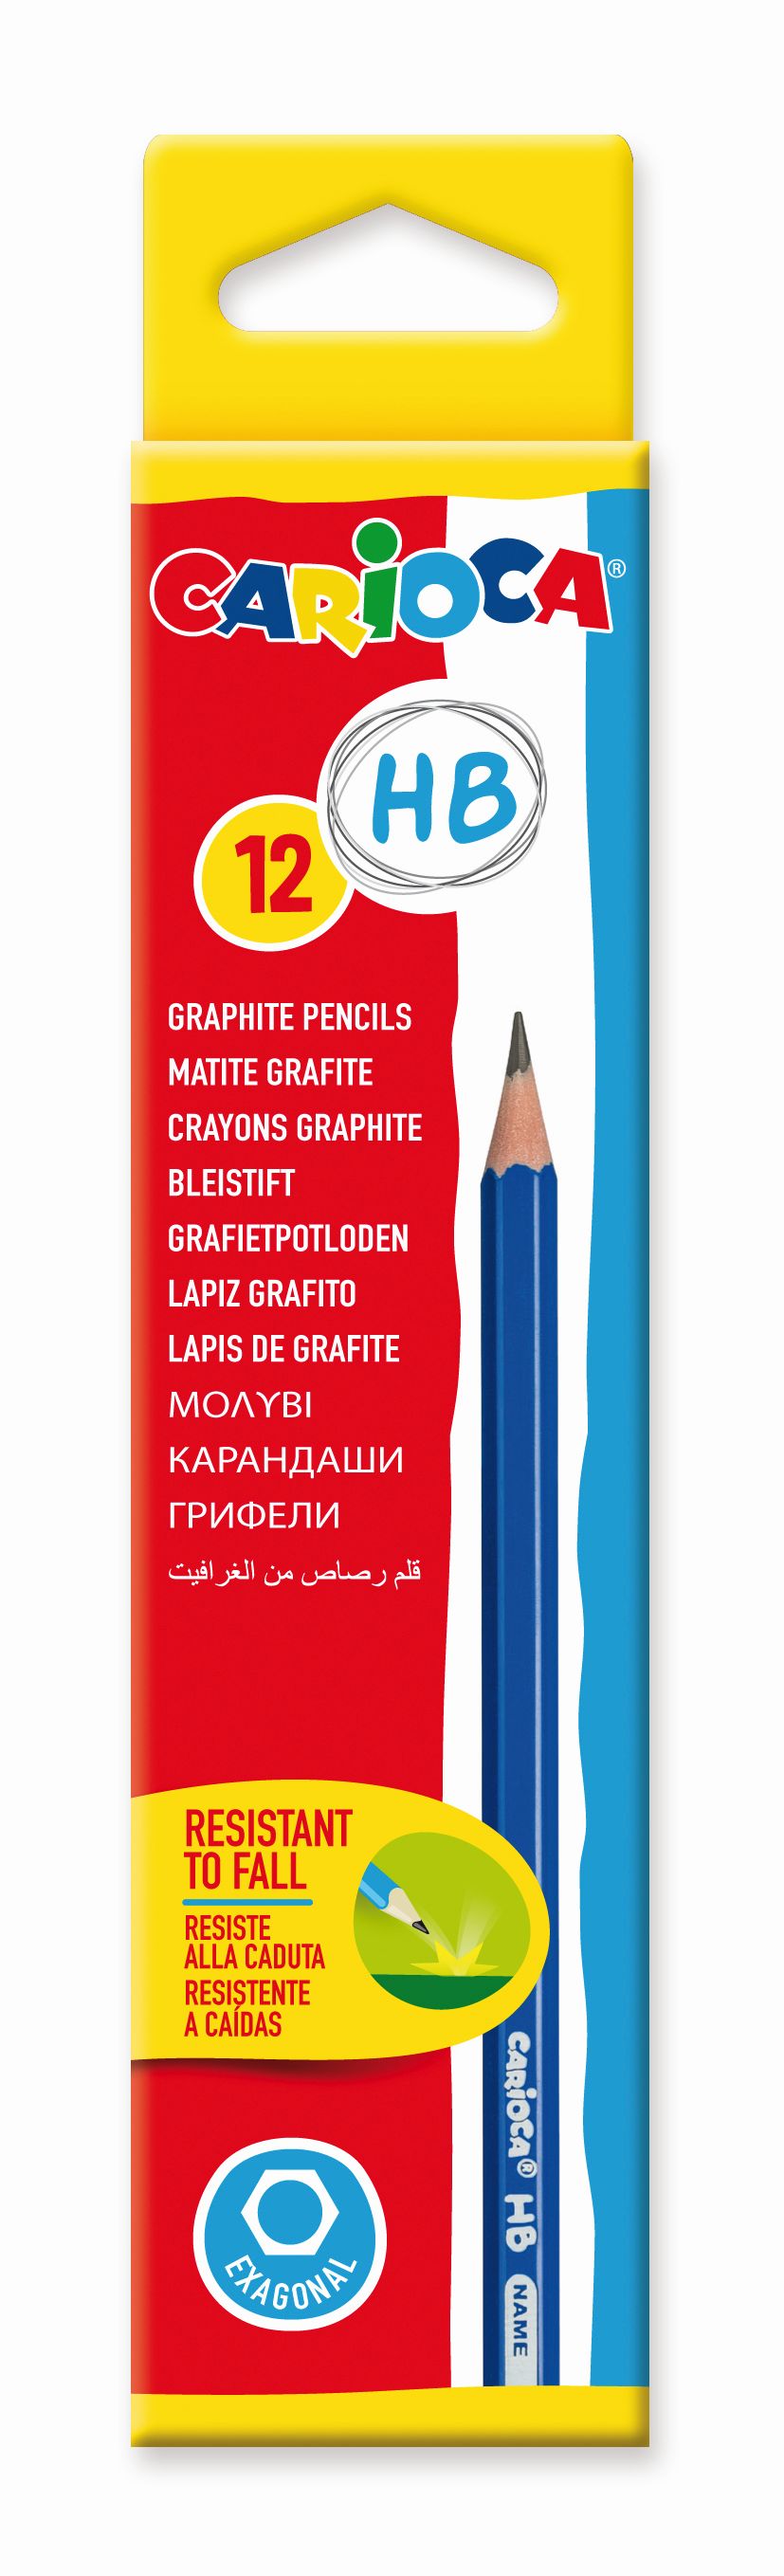 Creion grafit HB, Carioca